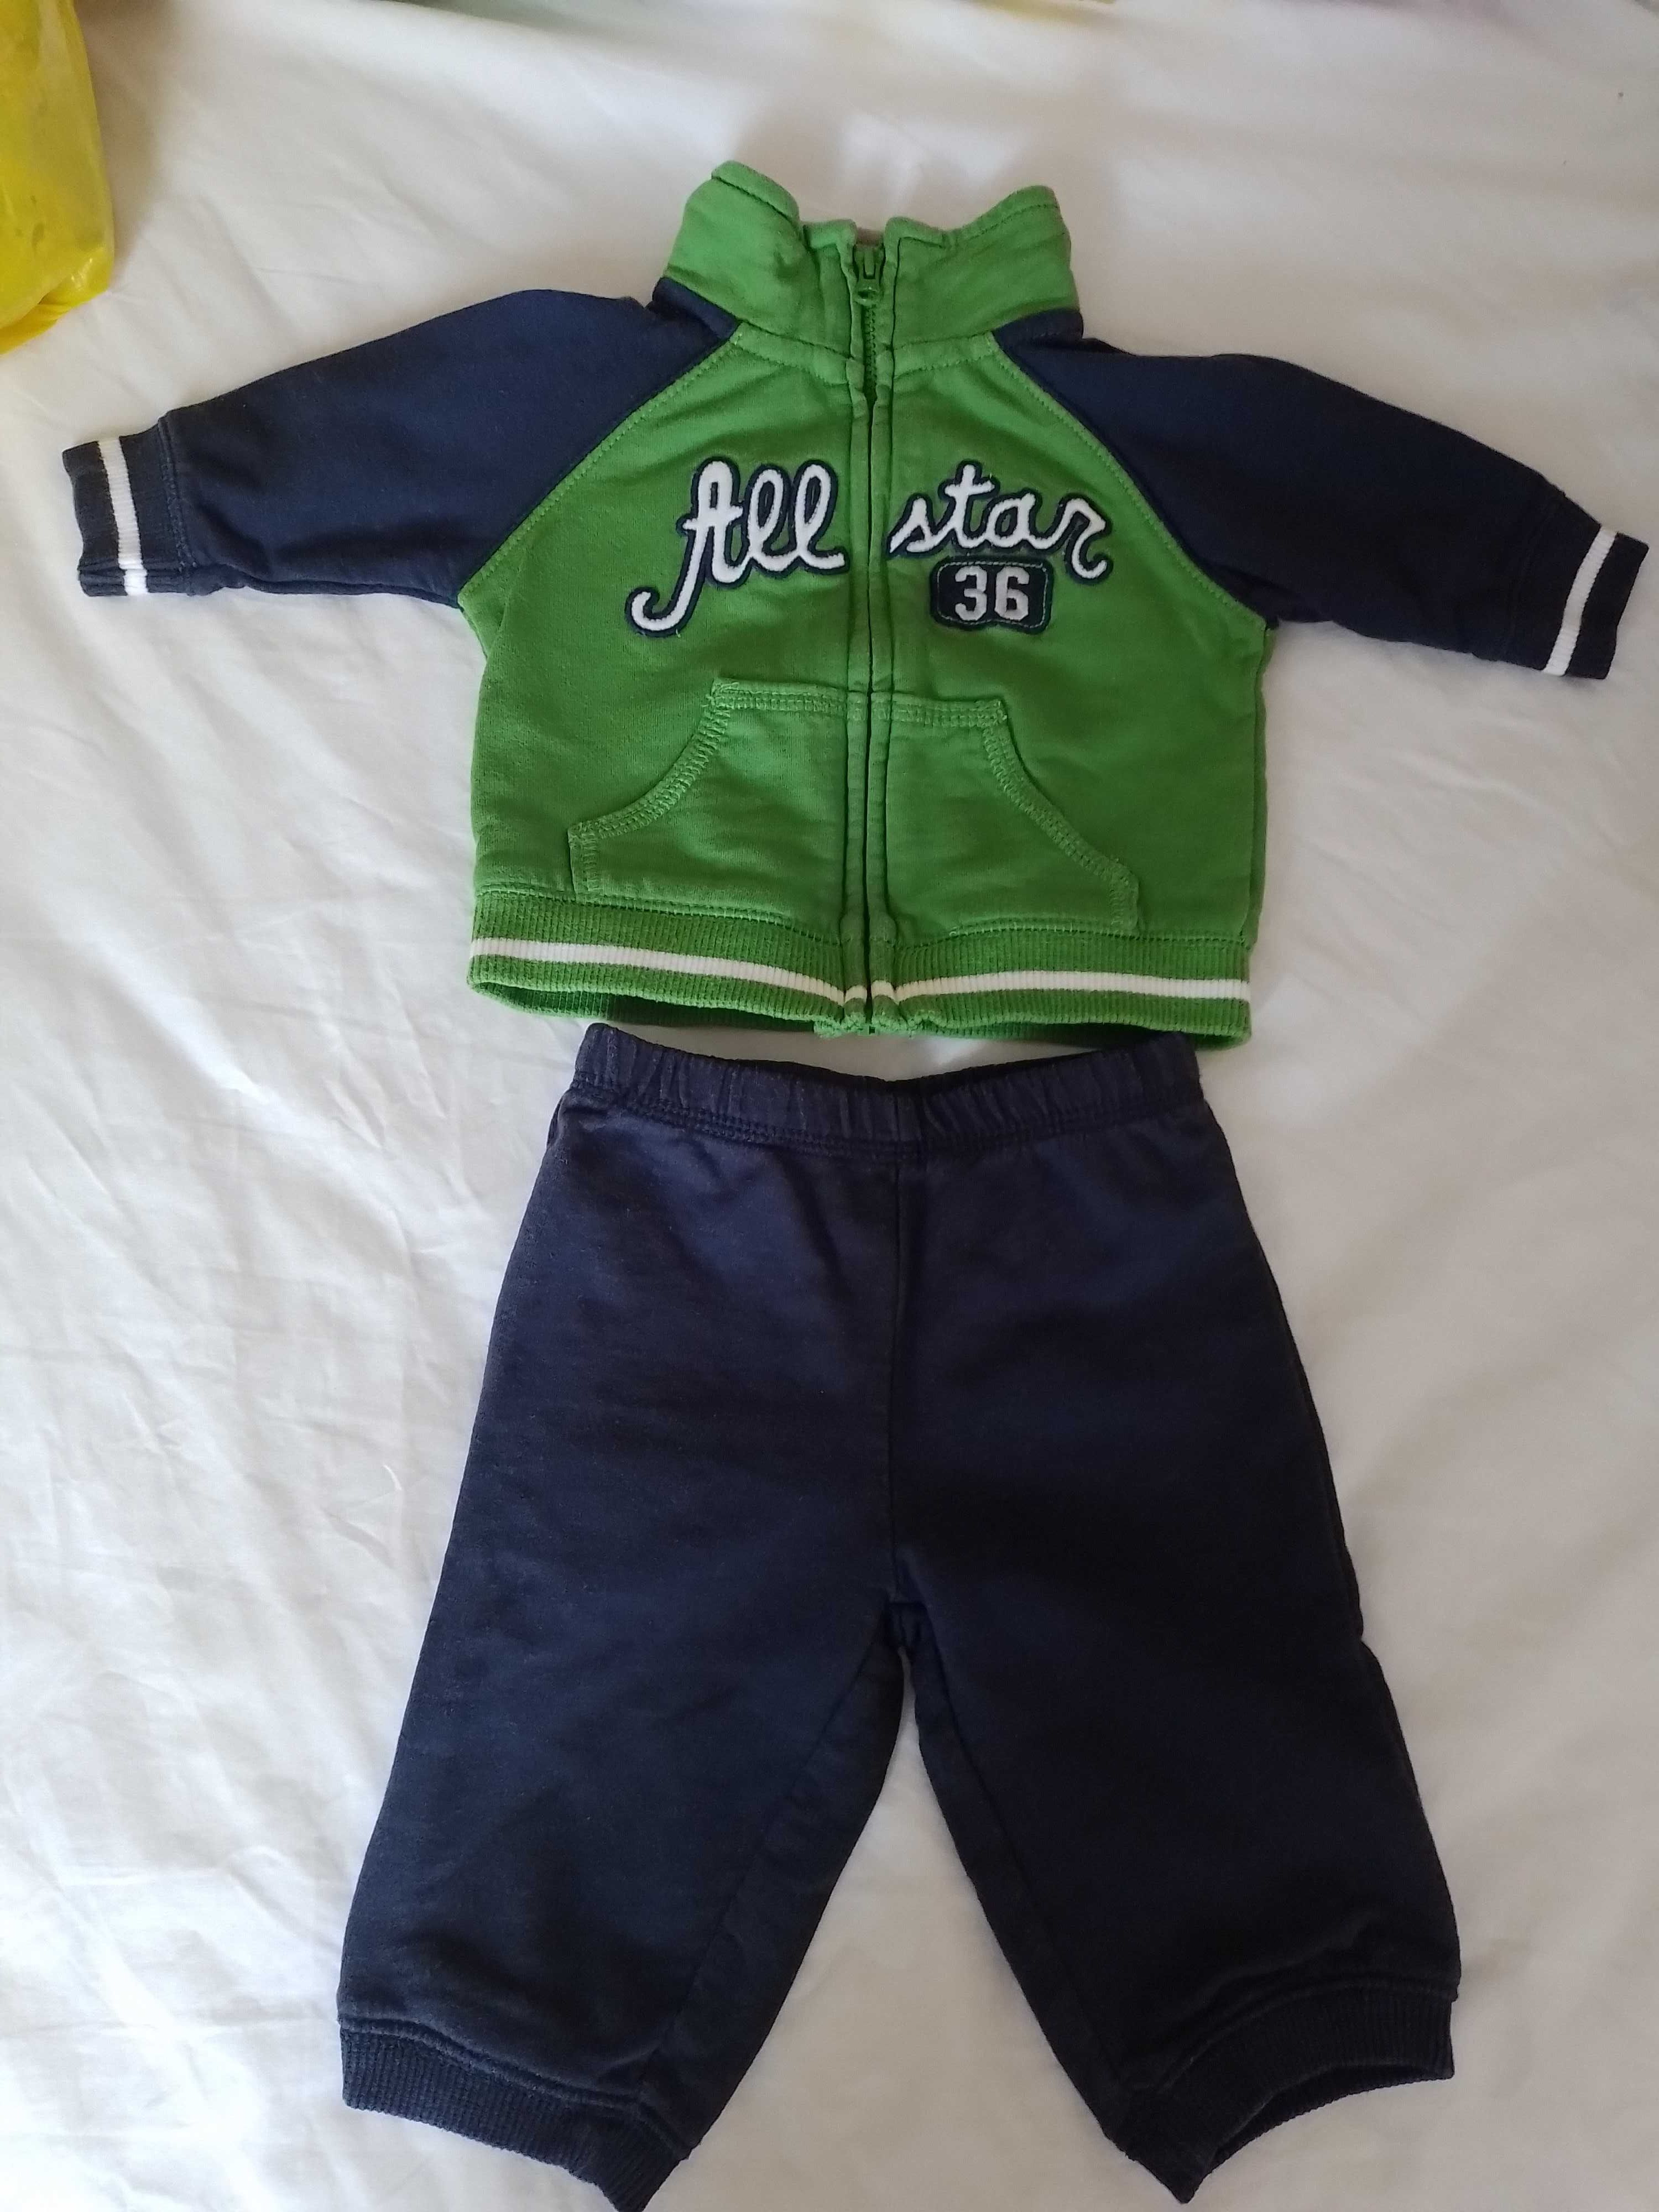 Одежда костюмчик для новорожденного 0-3 хлопковый Картерс Carters